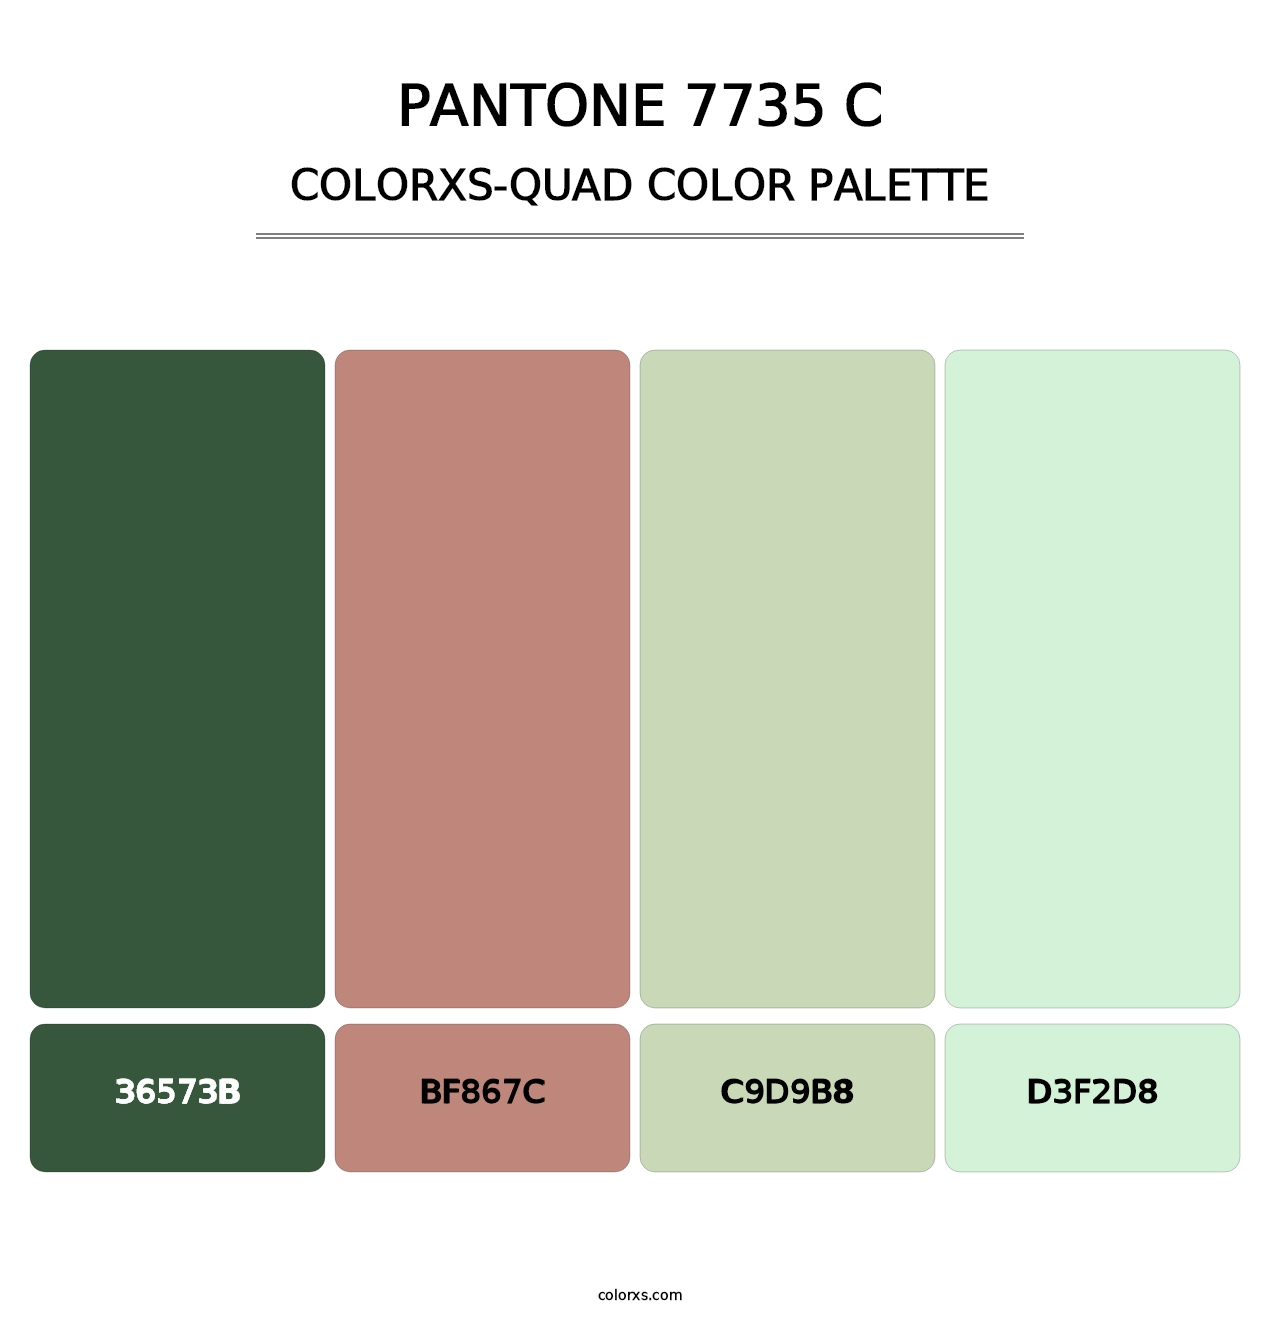 PANTONE 7735 C - Colorxs Quad Palette